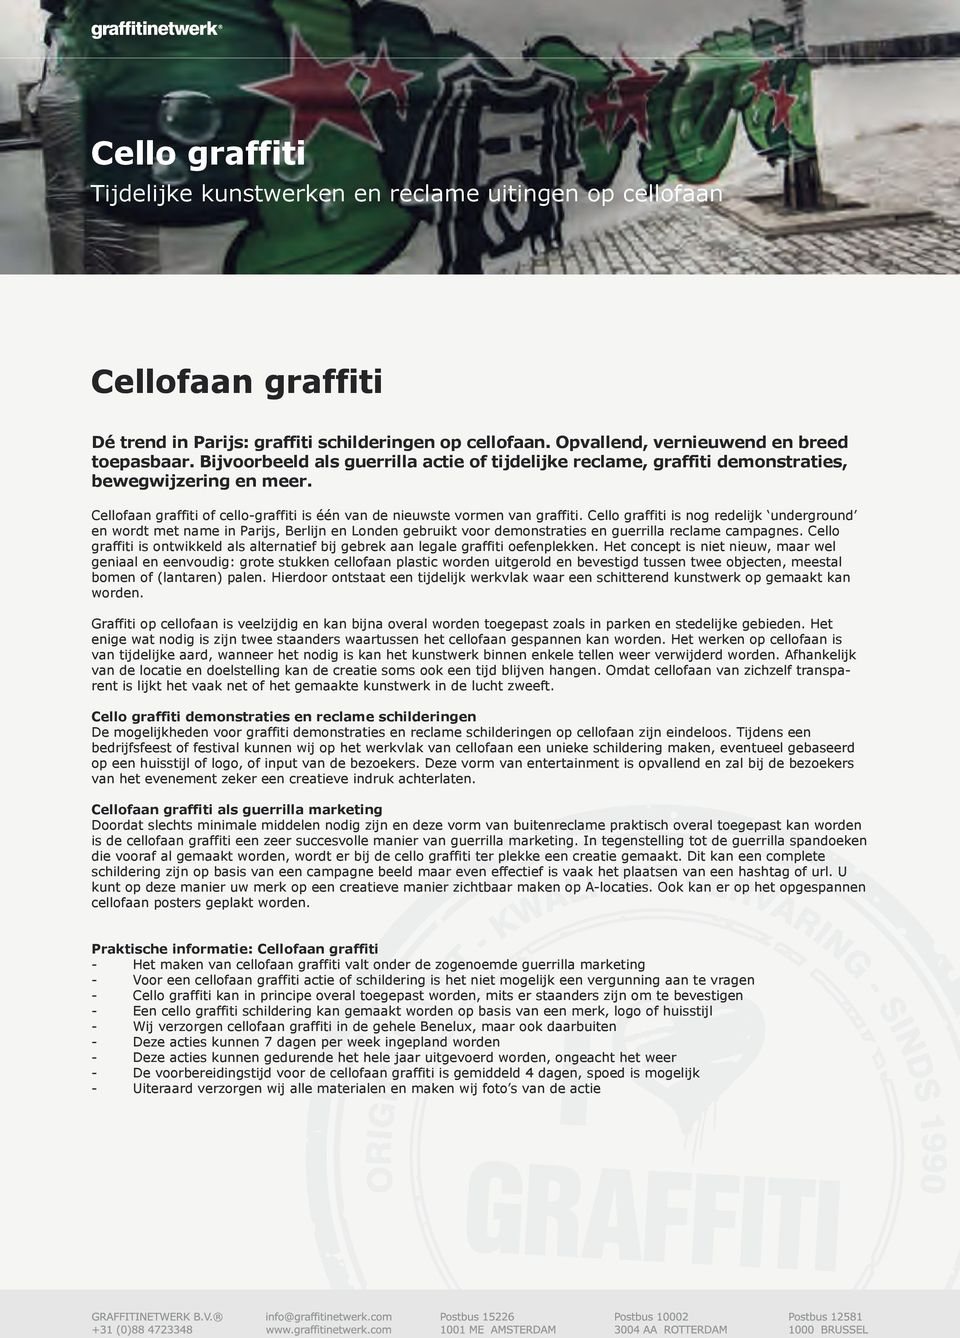 Cello graffiti is nog redelijk underground en wordt met name in Parijs, Berlijn en Londen gebruikt voor demonstraties en guerrilla reclame campagnes.